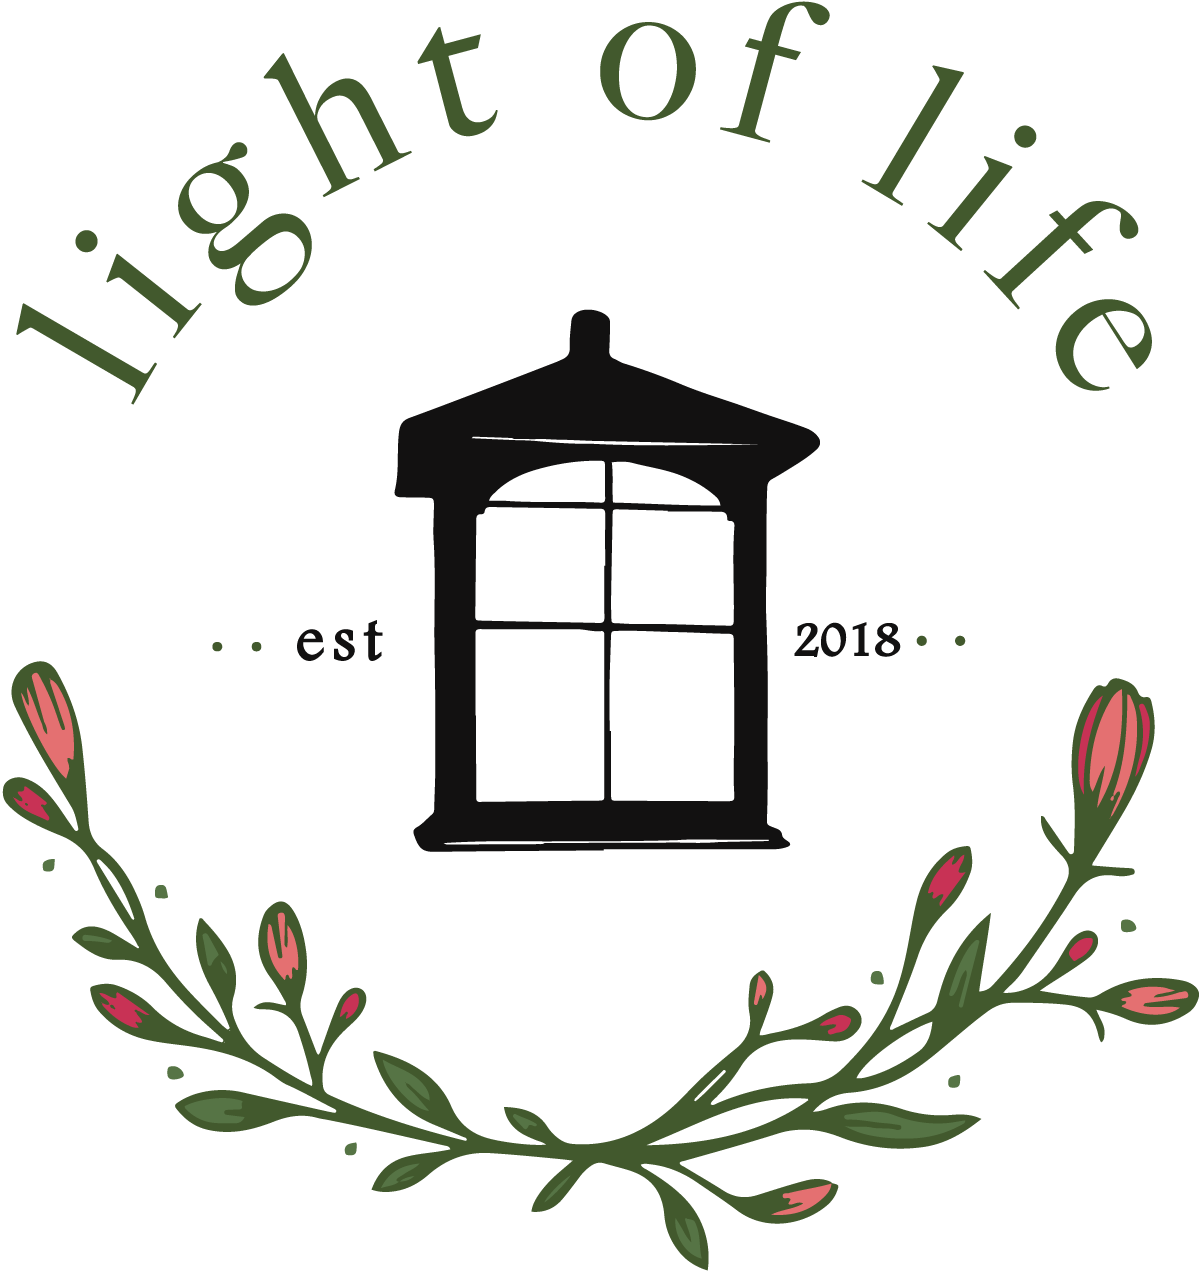 Light Of Life